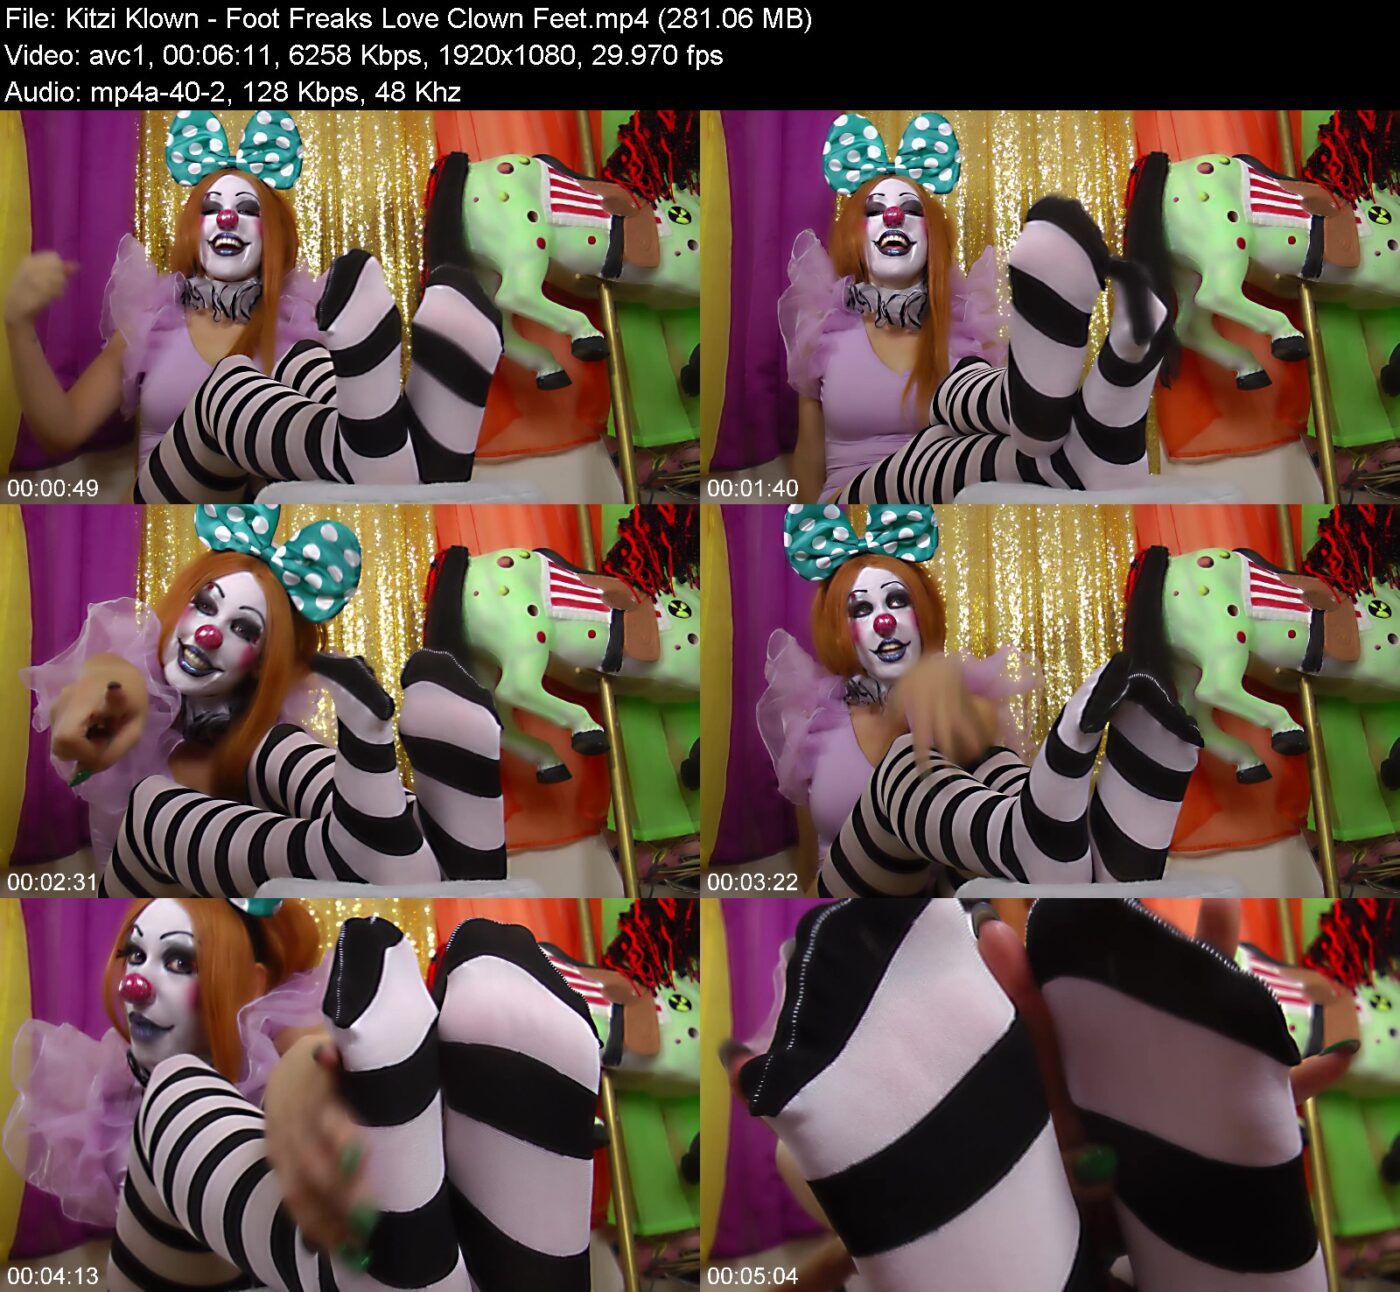 Kitzi Klown - Foot Freaks Love Clown Feet